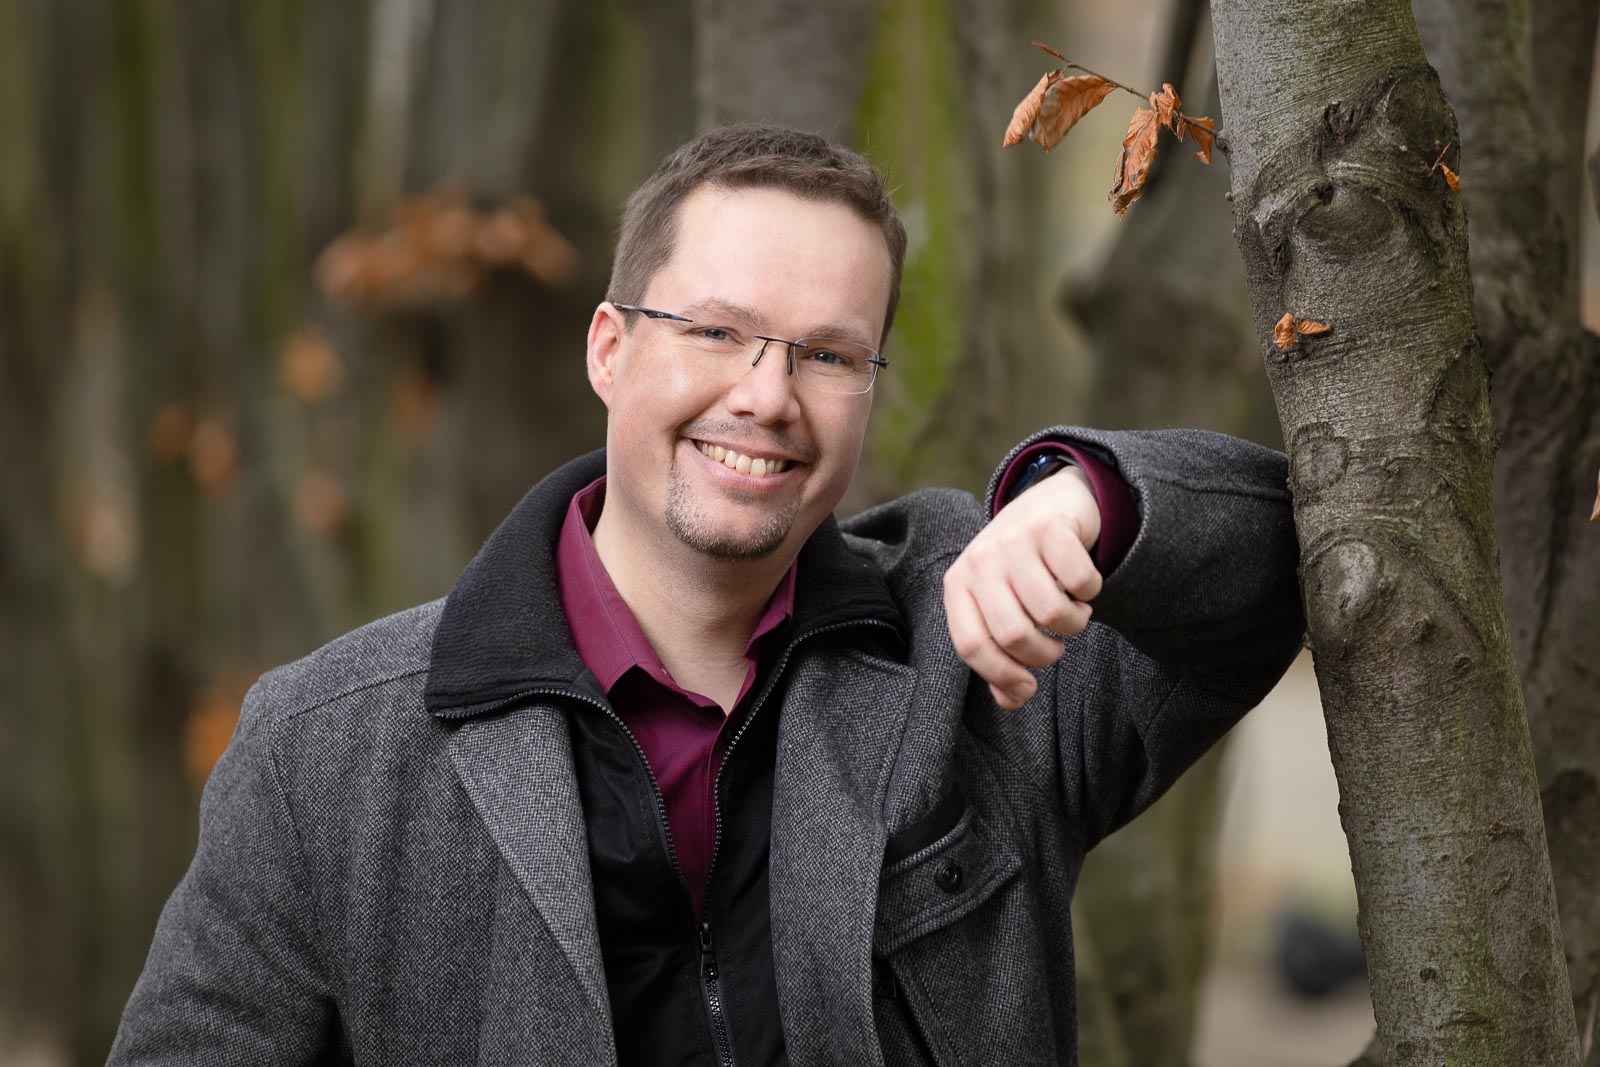 Dating-Foto eines jungen Mannes in einer warmen Jacke, der sich freundlich lächelnd an einem Baum lehnt